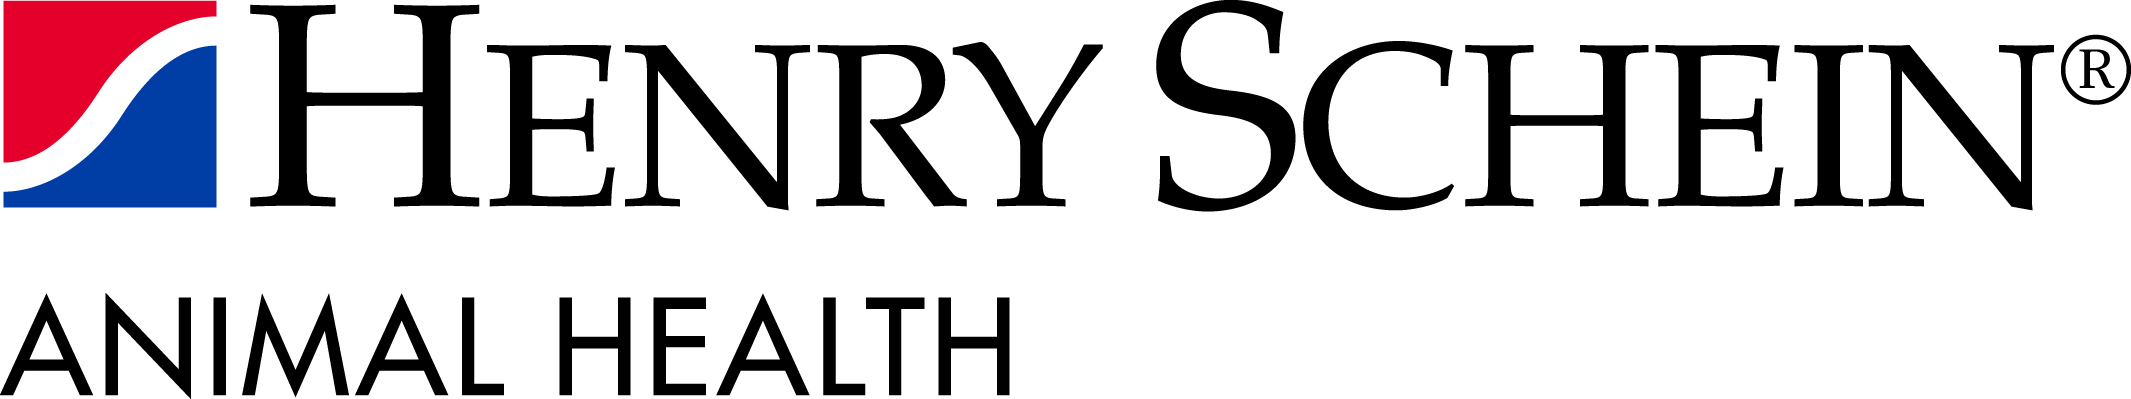 Henry_Schein-logo